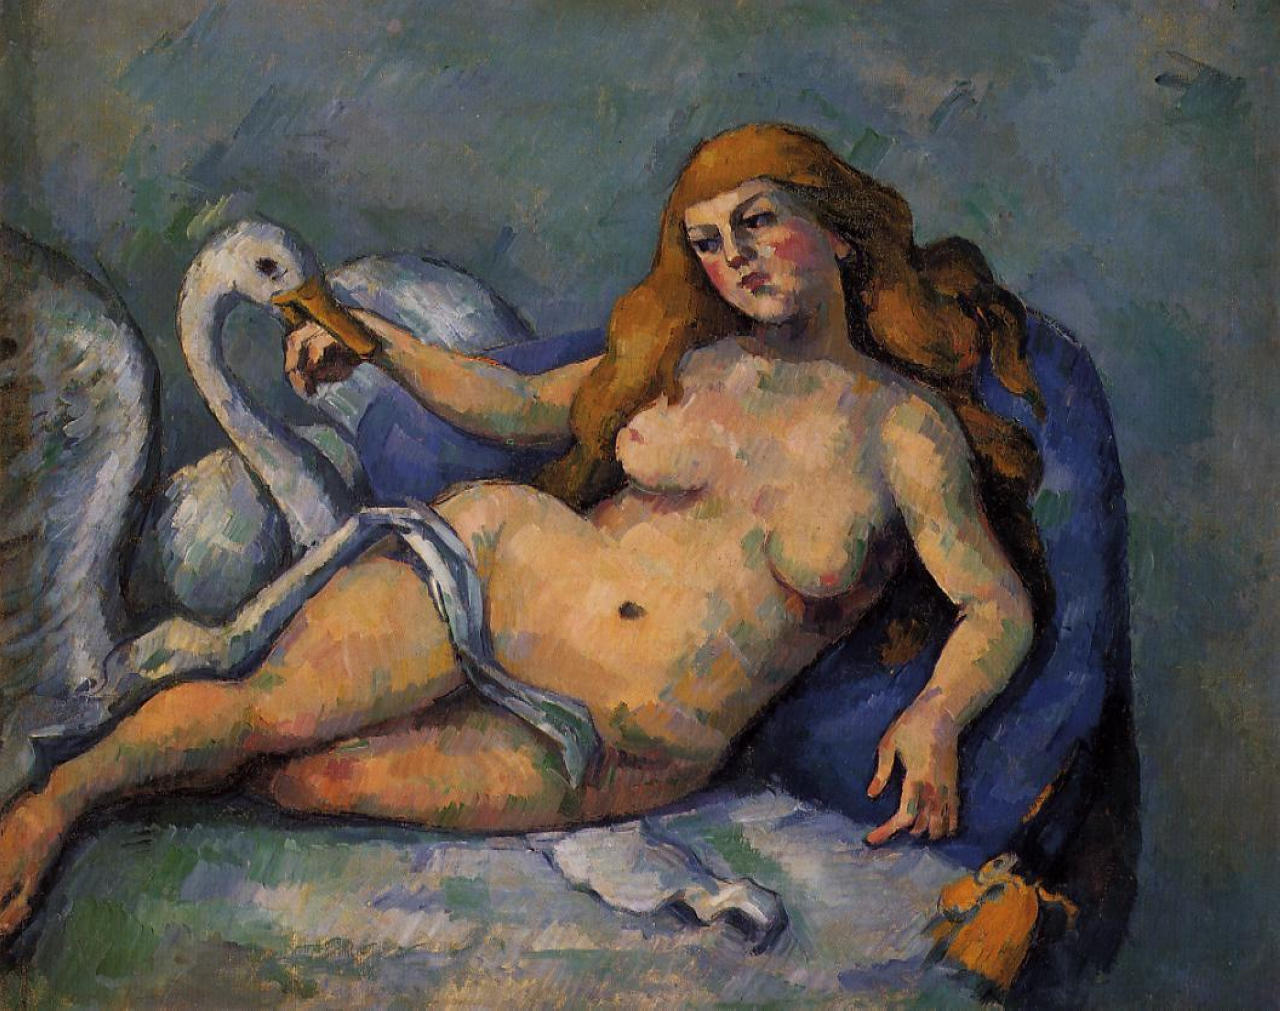 麗妲與天鵝 by Paul Cézanne - 約1882 - 59.7 x 74.9 公分 